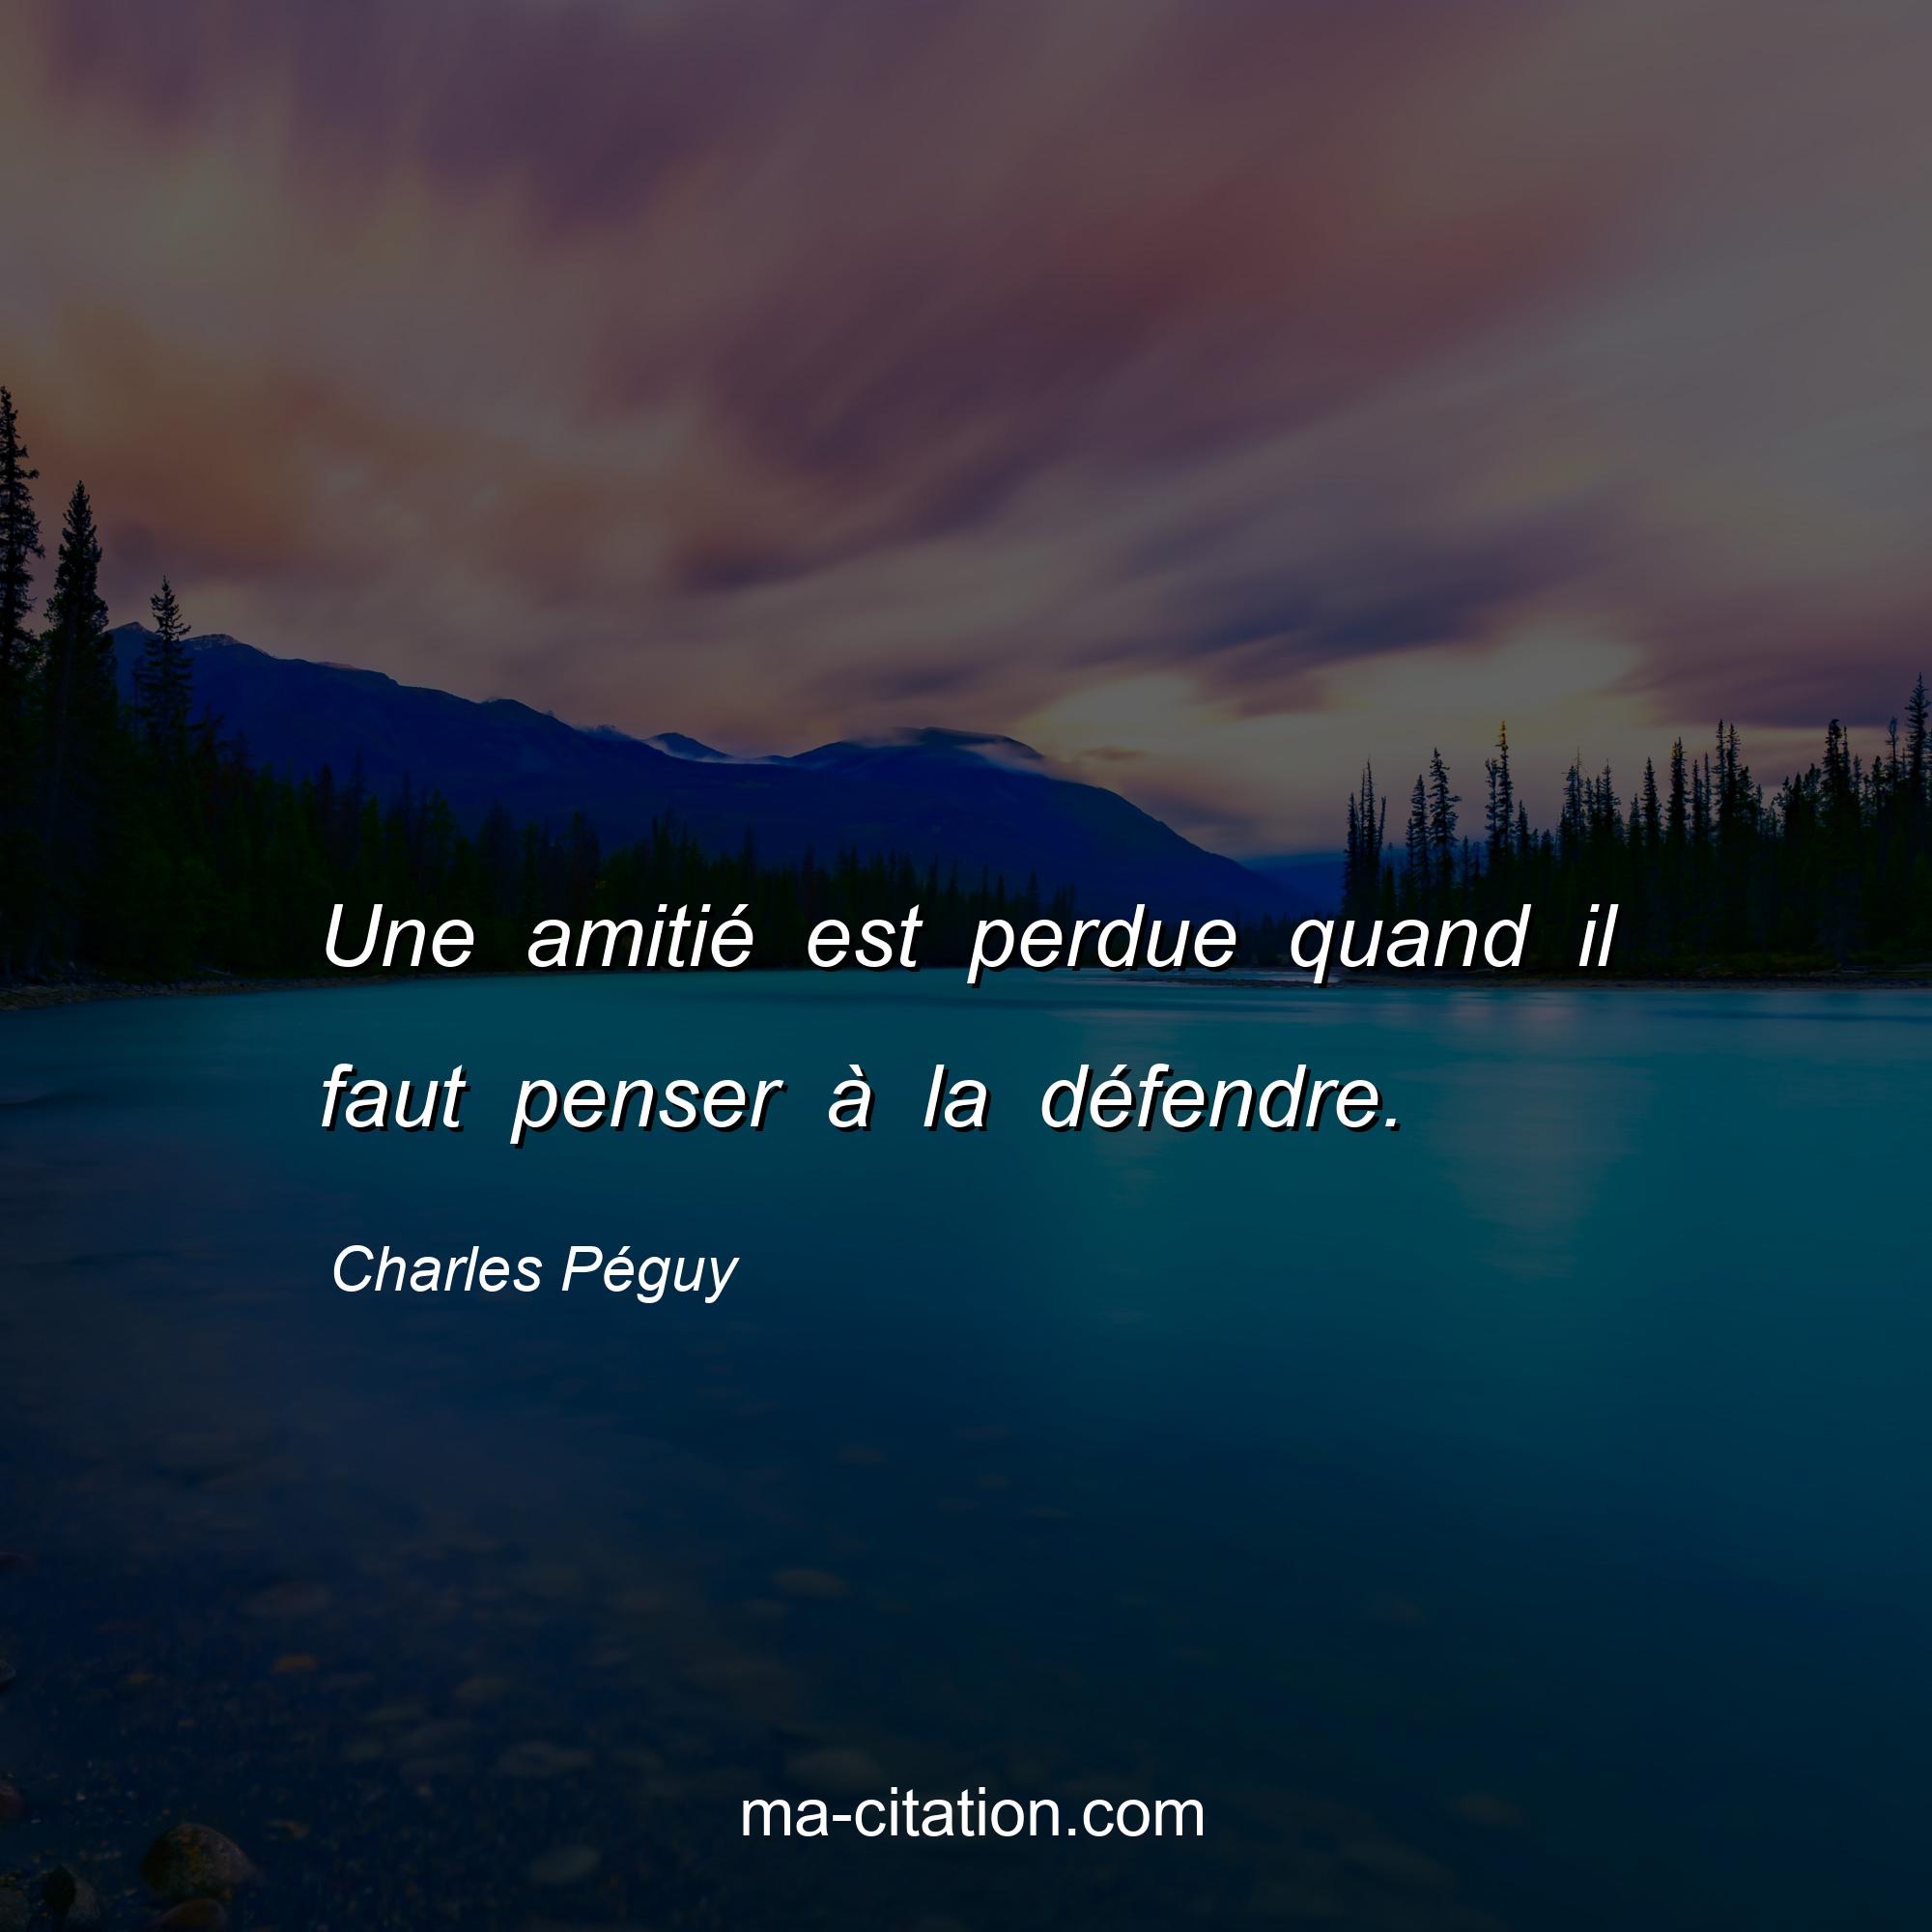 Charles Péguy : Une amitié est perdue quand il faut penser à la défendre.